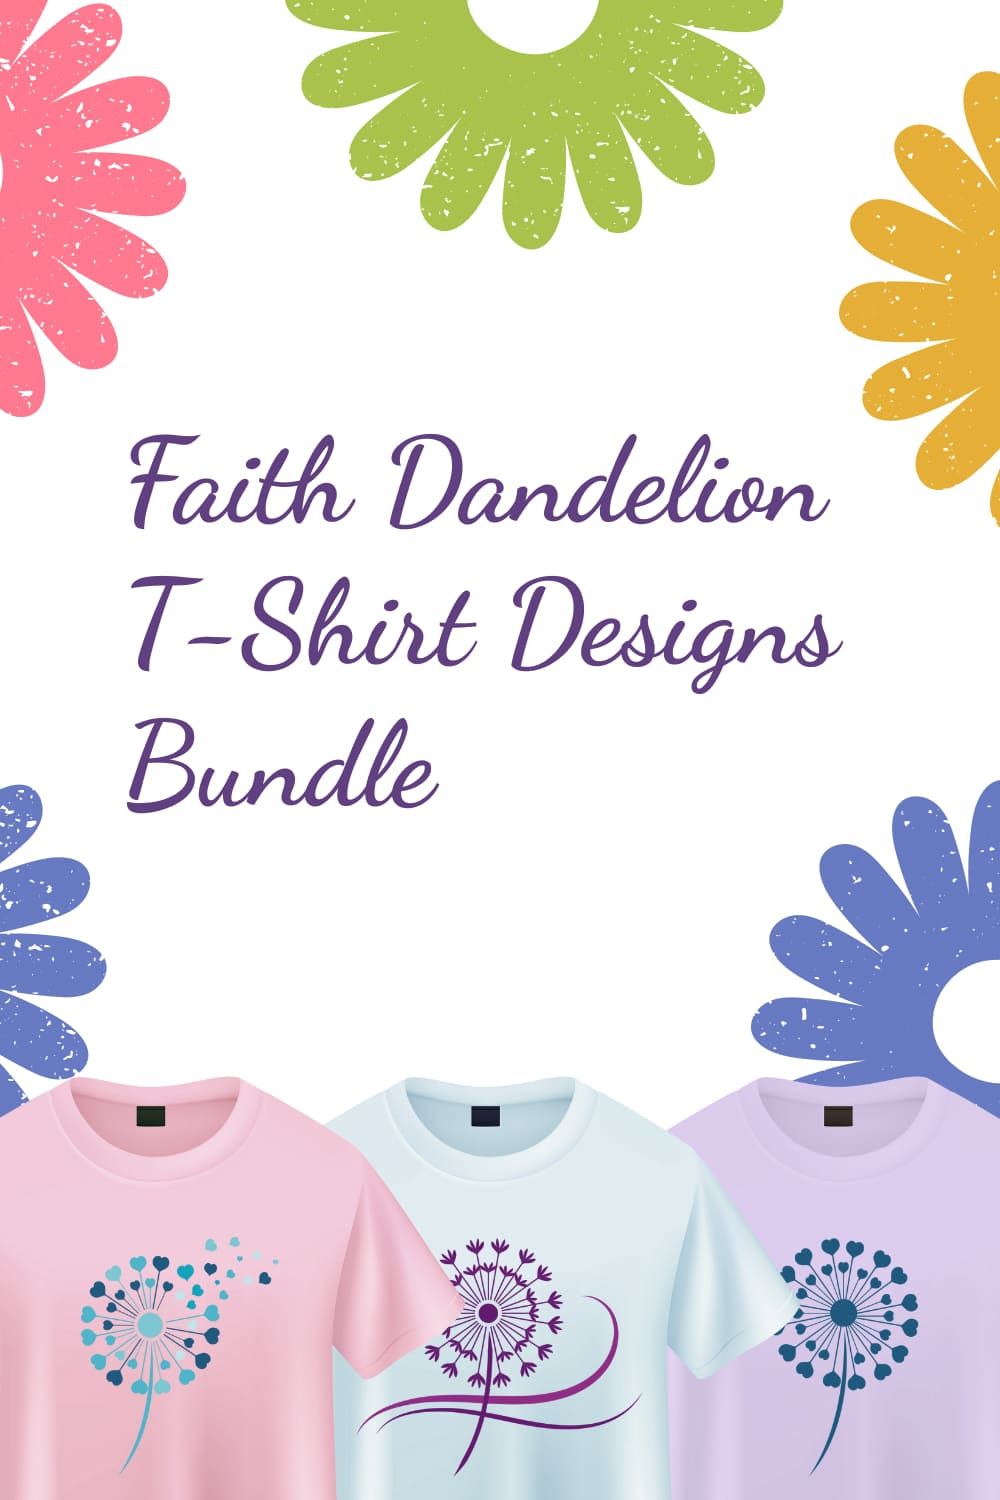 Simple Dandelion T-shirt Designs Bundle – MasterBundles